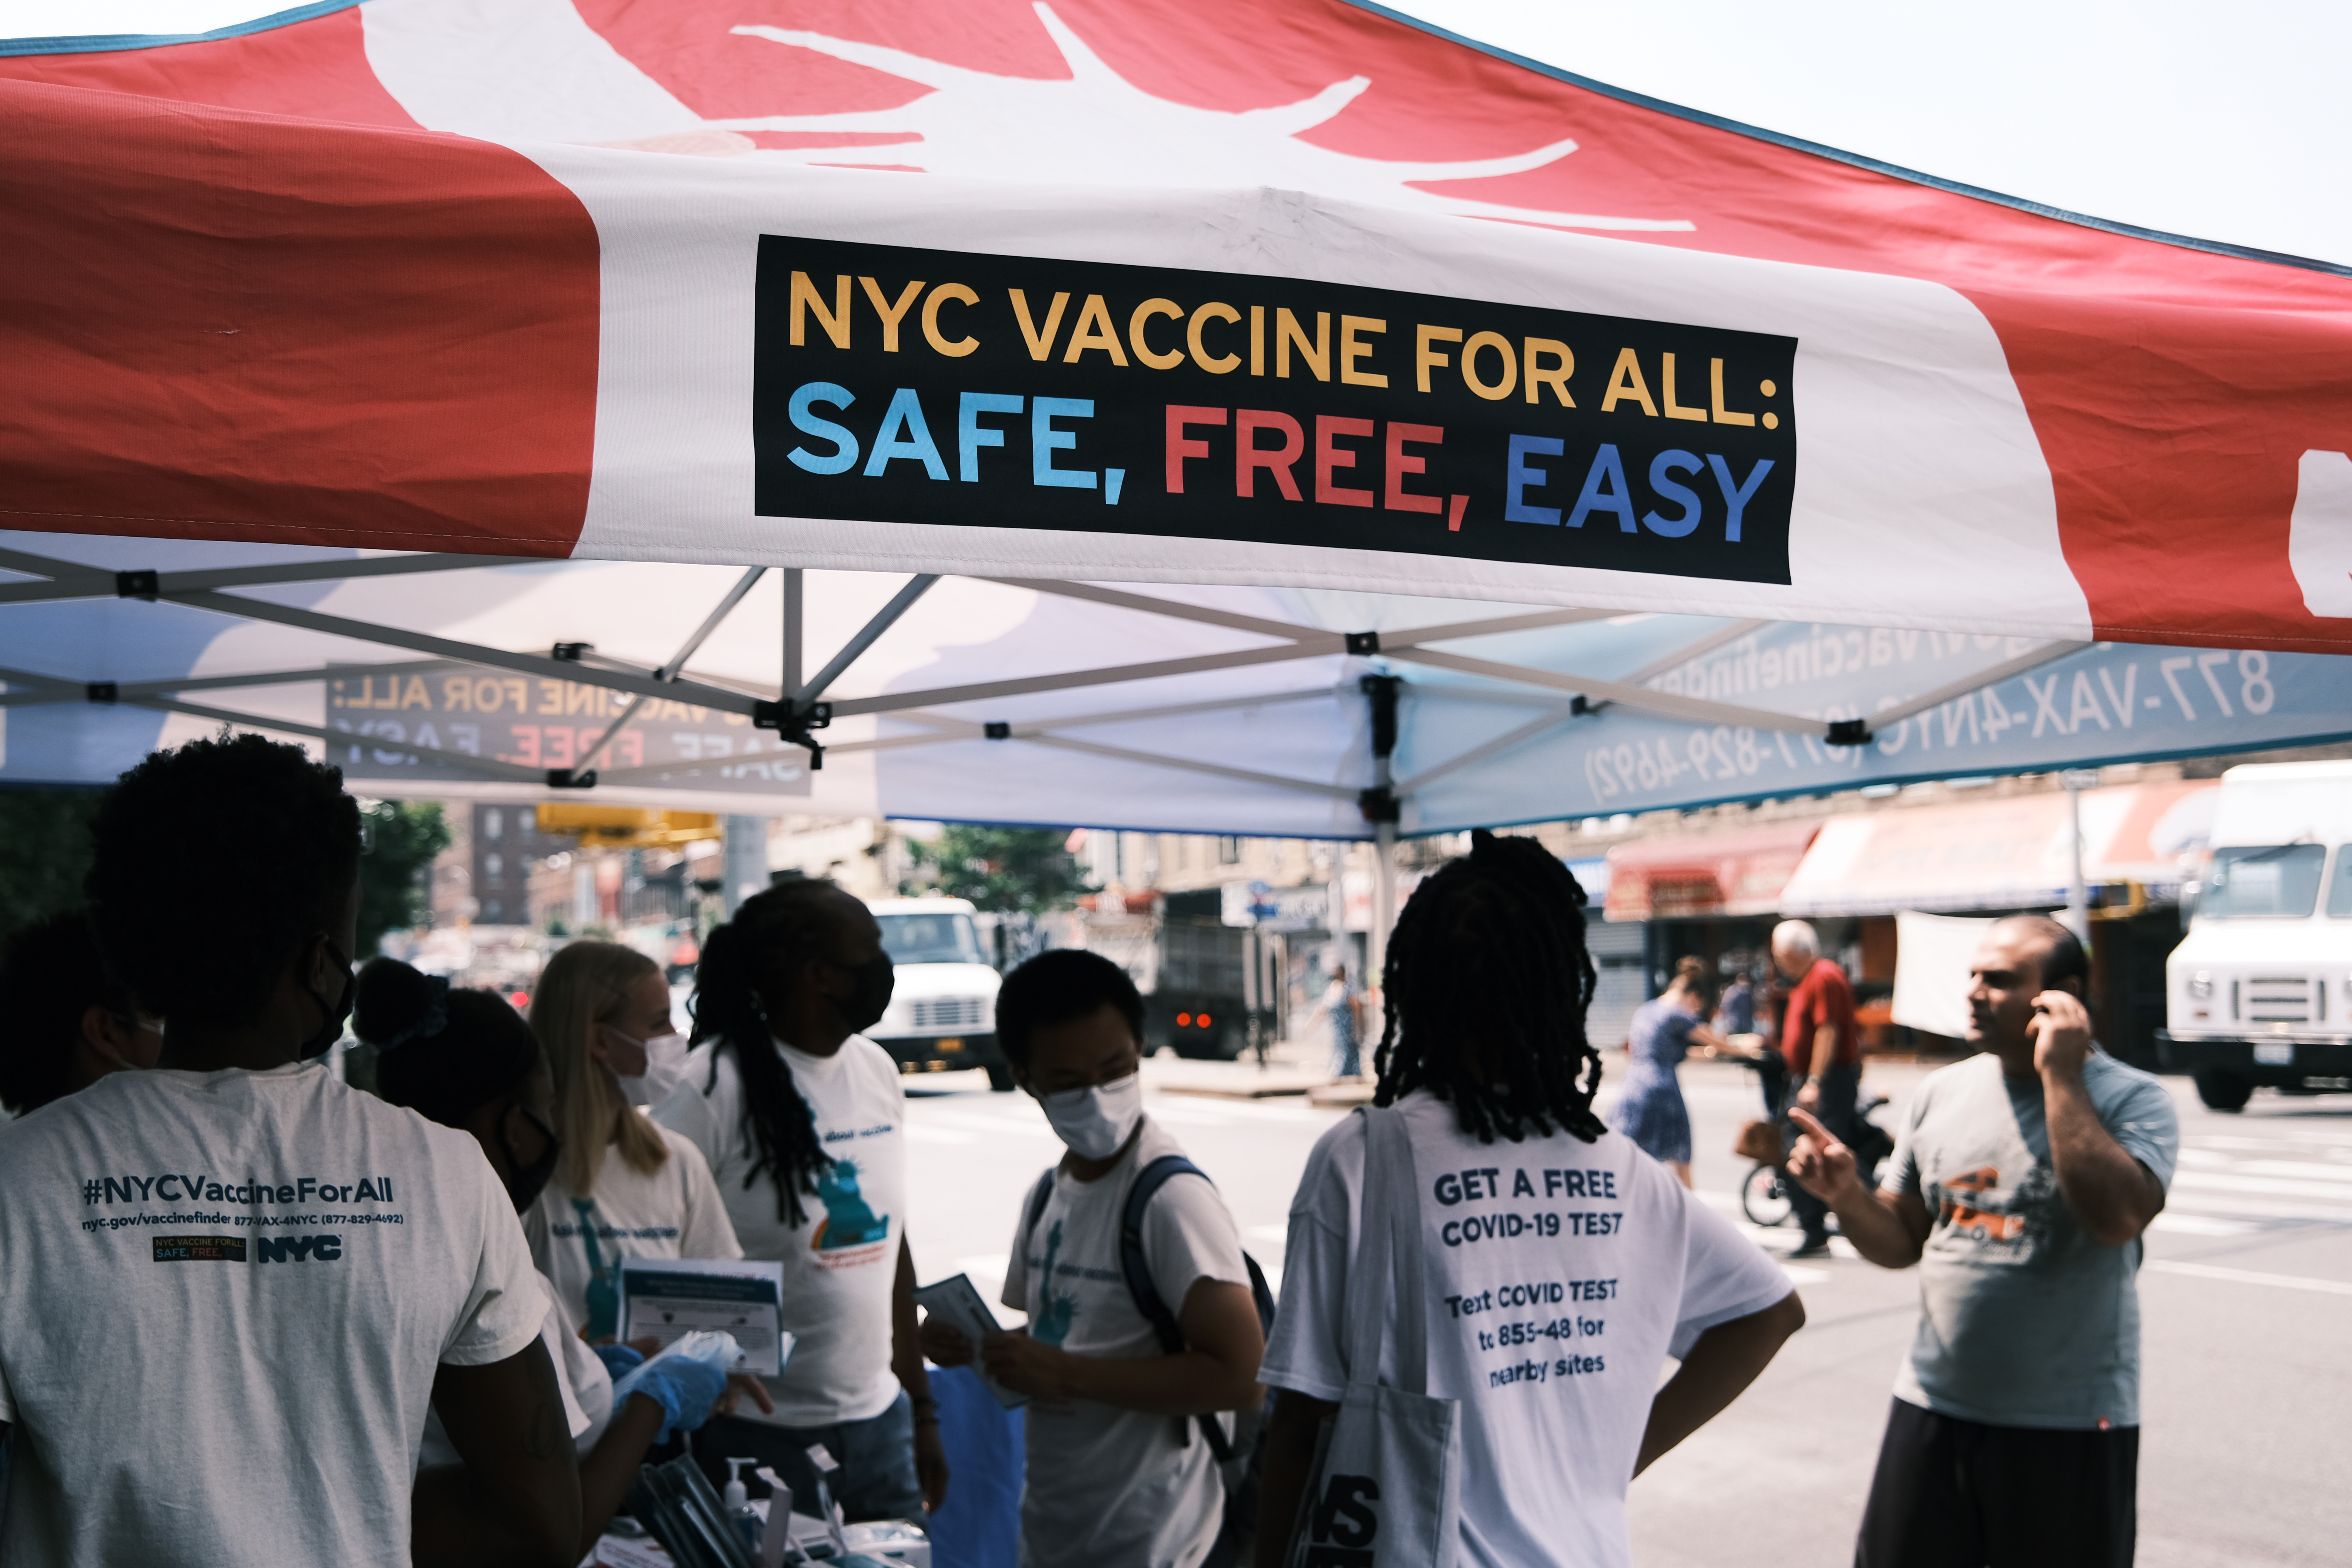 Una farmacia móvil operada por la ciudad anuncia la vacuna COVID-19 en un vecindario cerca de Brighton Beach el 26 de julio de 2021 en el distrito de Brooklyn de la ciudad de Nueva York.